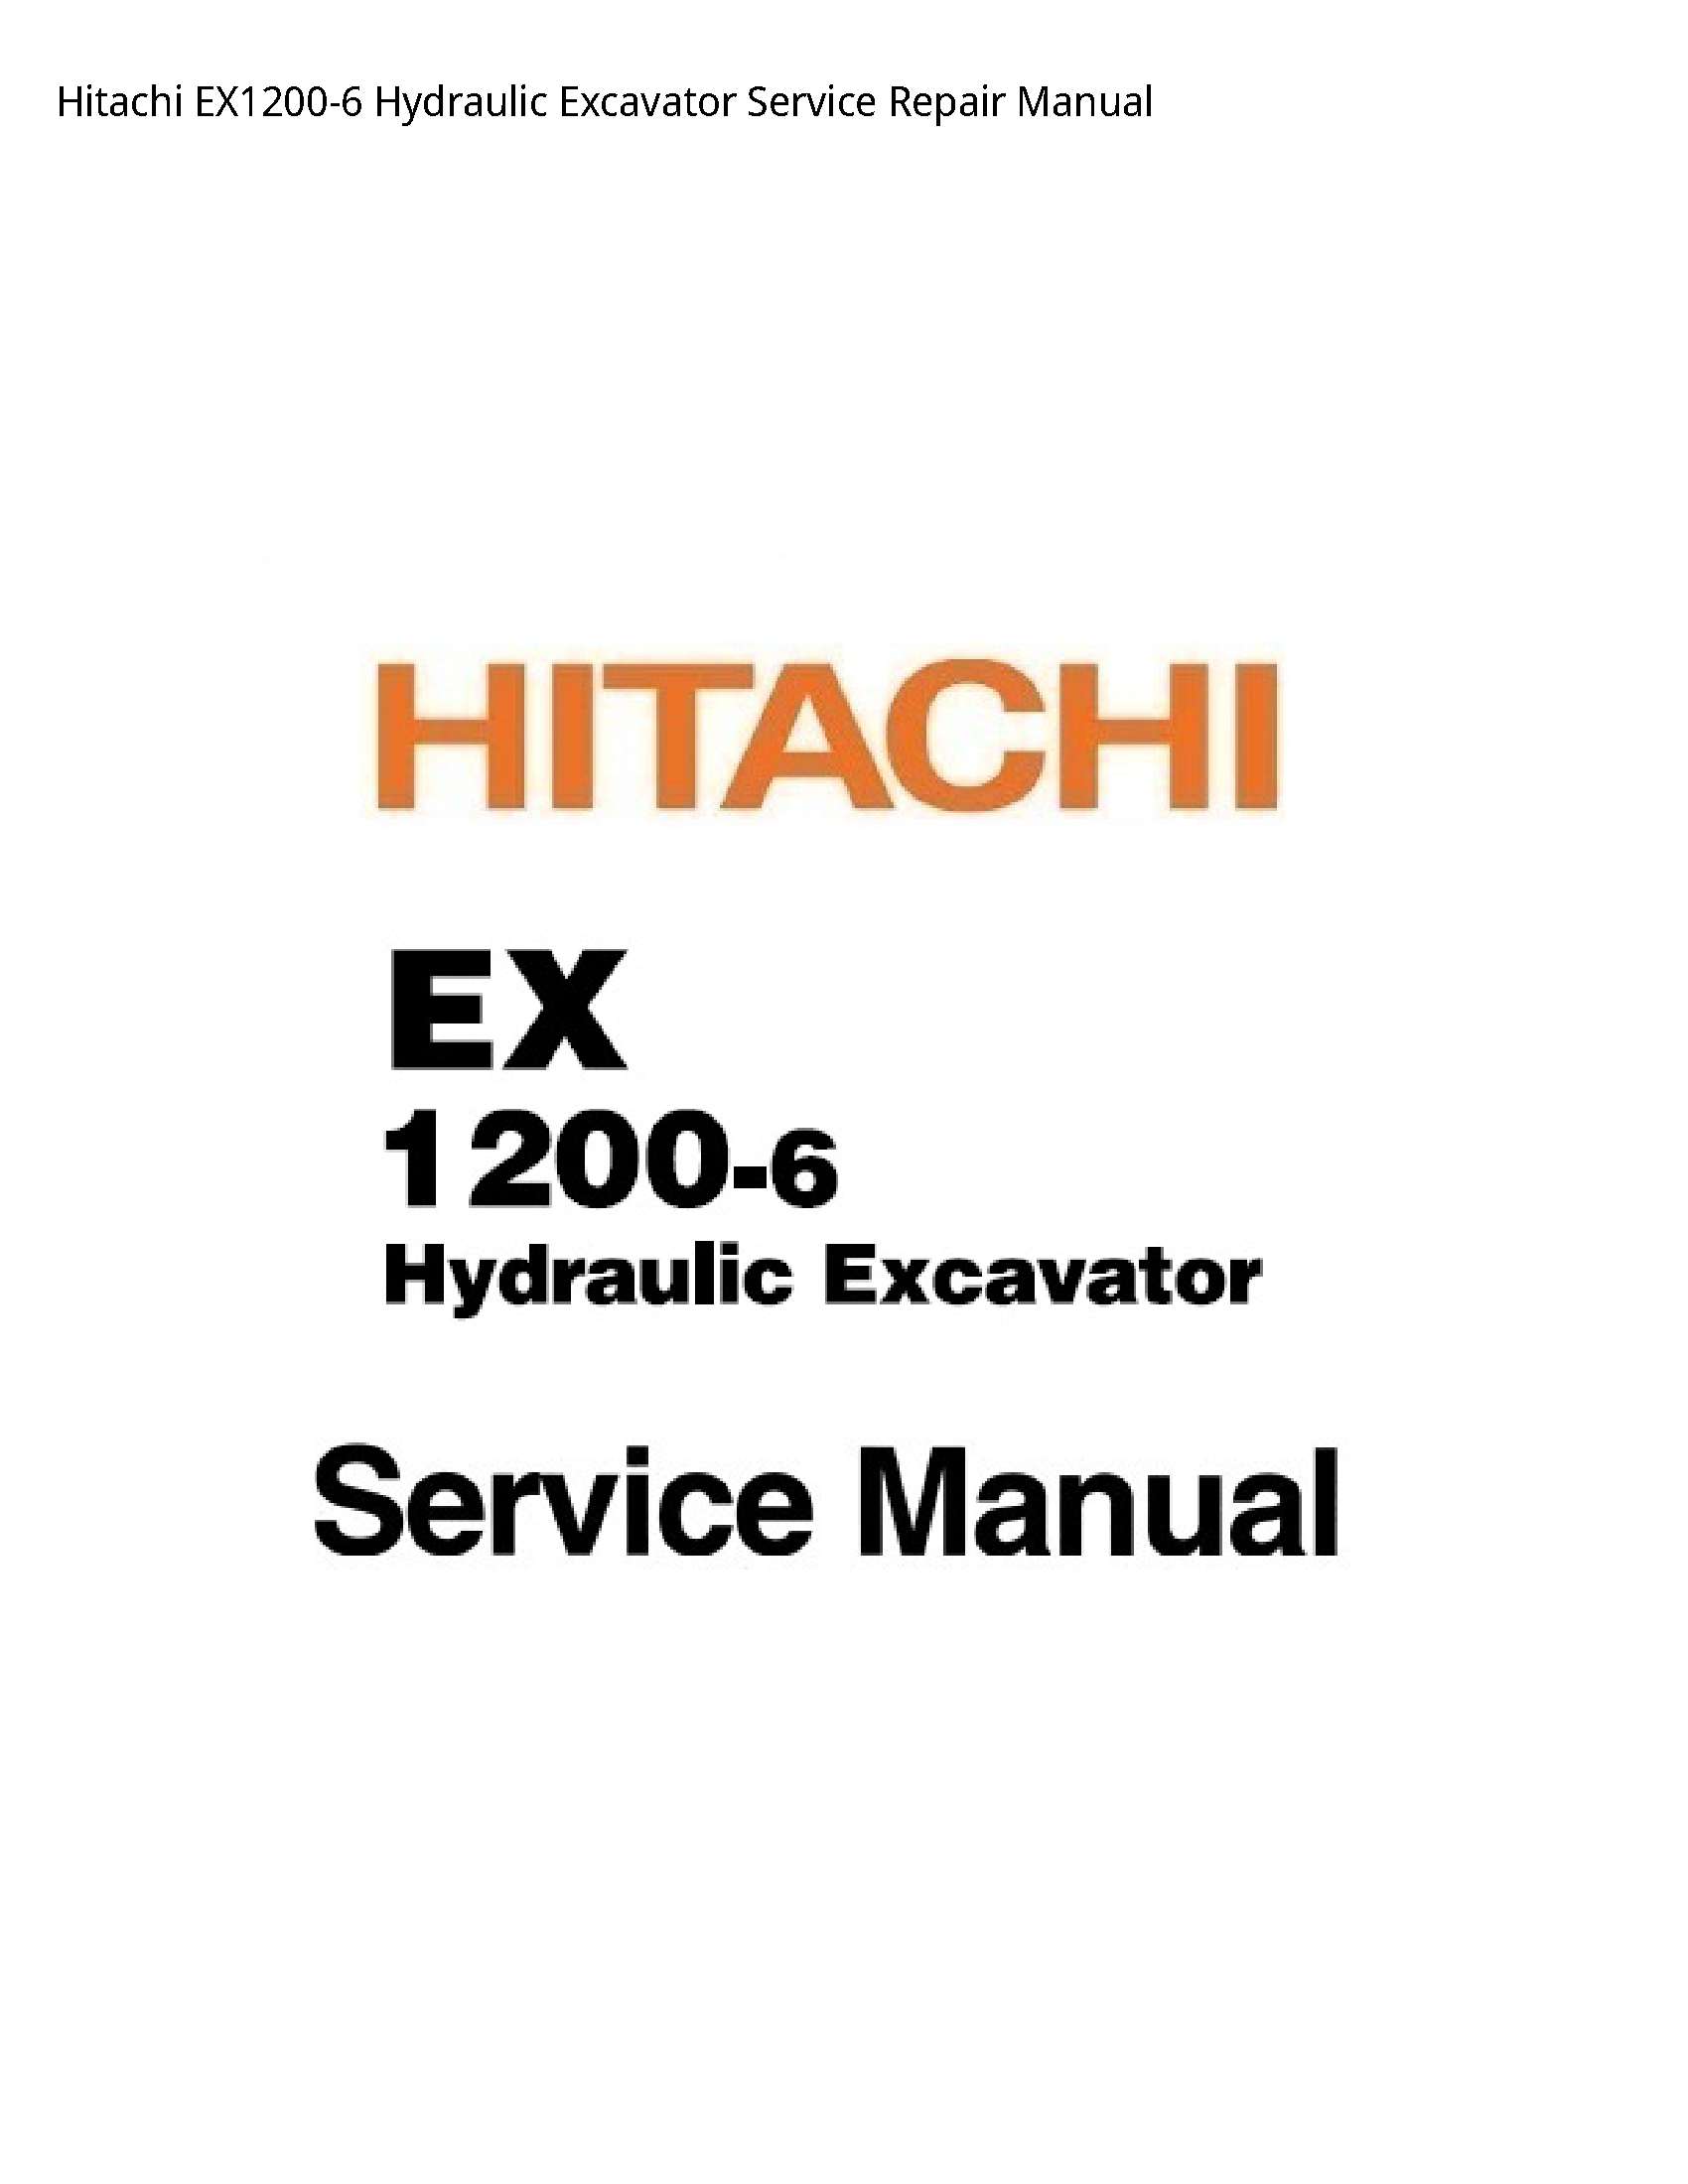 Hitachi EX1200-6 Hydraulic Excavator manual